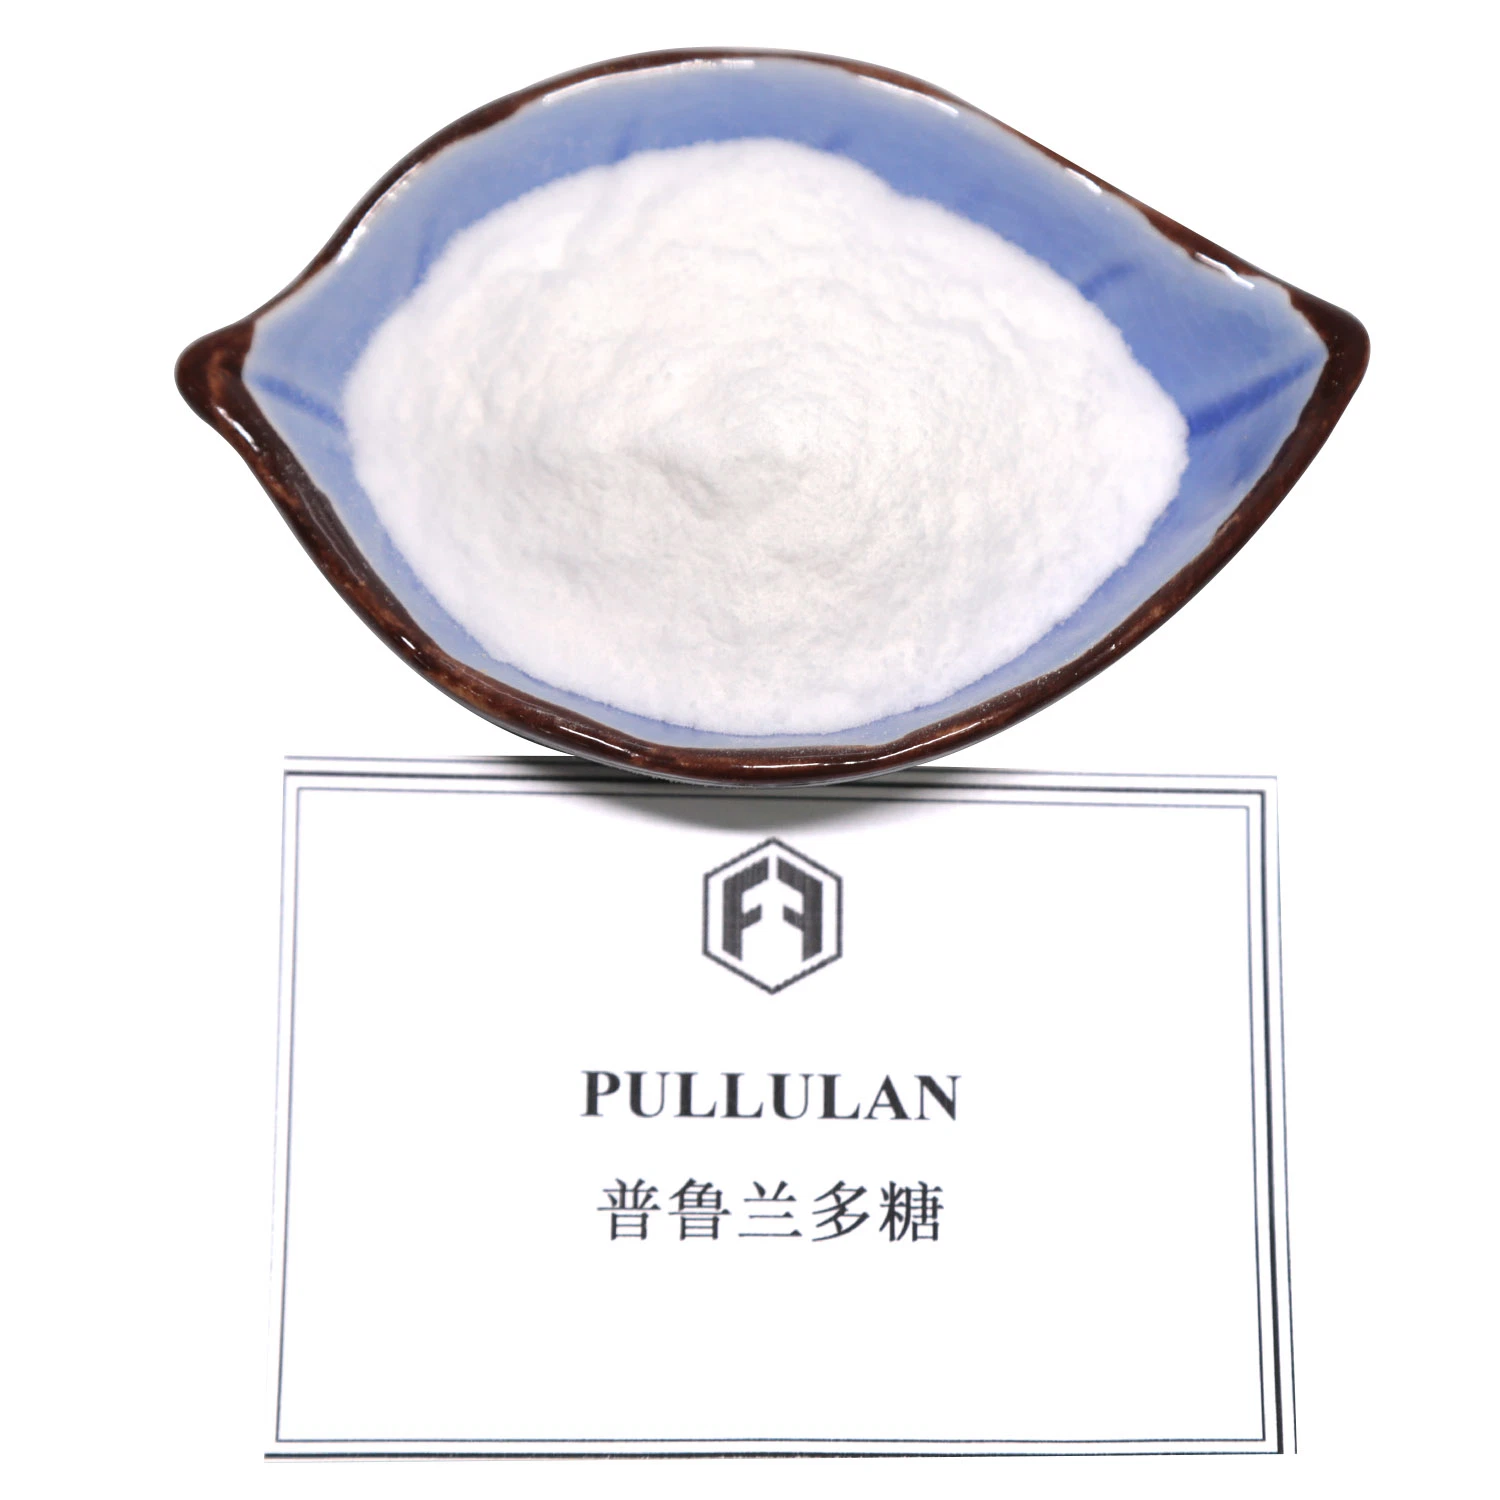 Pullulan ist weit verbreitet in der Lebensmittel-, Leichtindustrie, Chemische Industrie und Erdöl und anderen Bereichen verwendet.